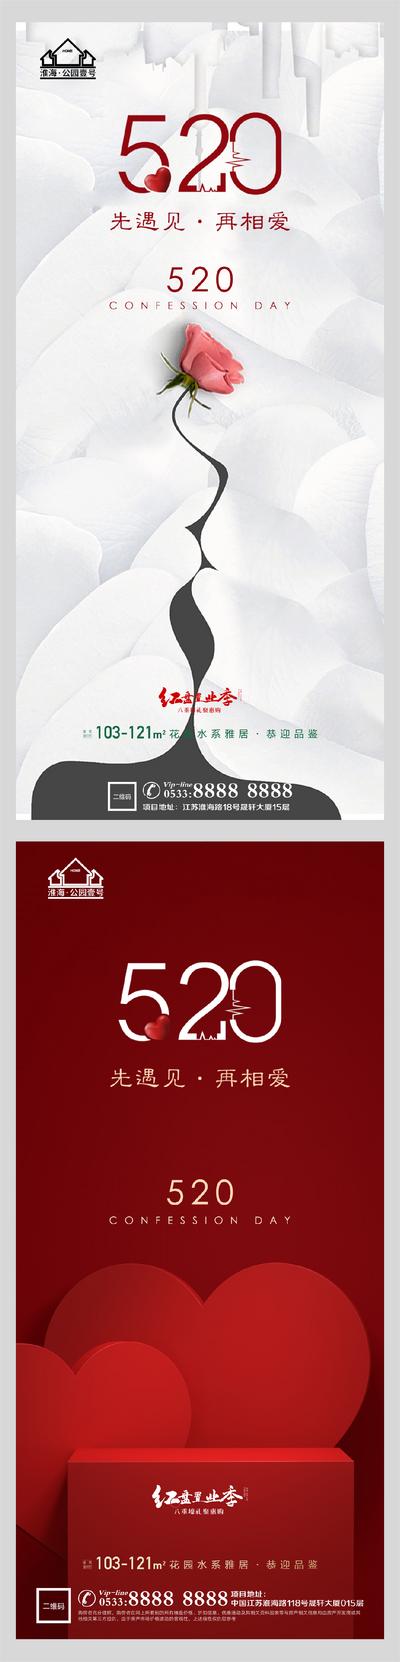 南门网 海报 公历节日 房地产 表白日 520 亲吻 爱心 系列